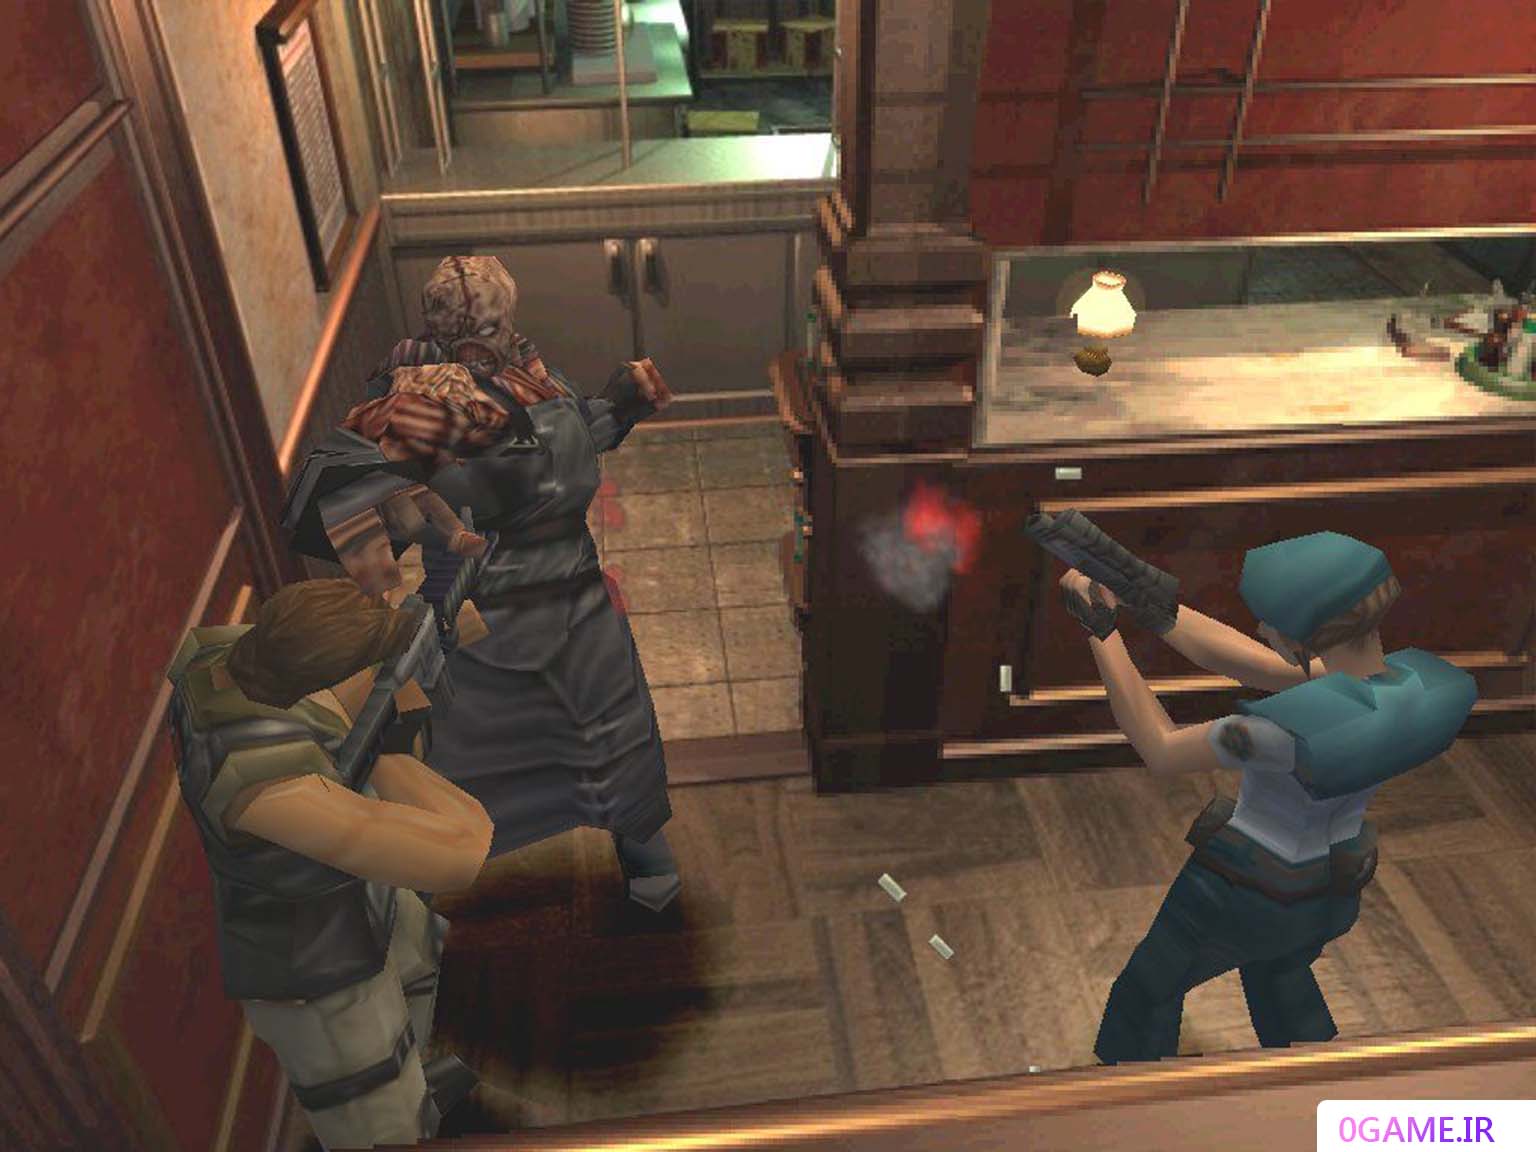 دانلود بازی رزیدنت ایول 3 : نمسیس (Resident Evil) نسخه کامل برای کامپیوتر